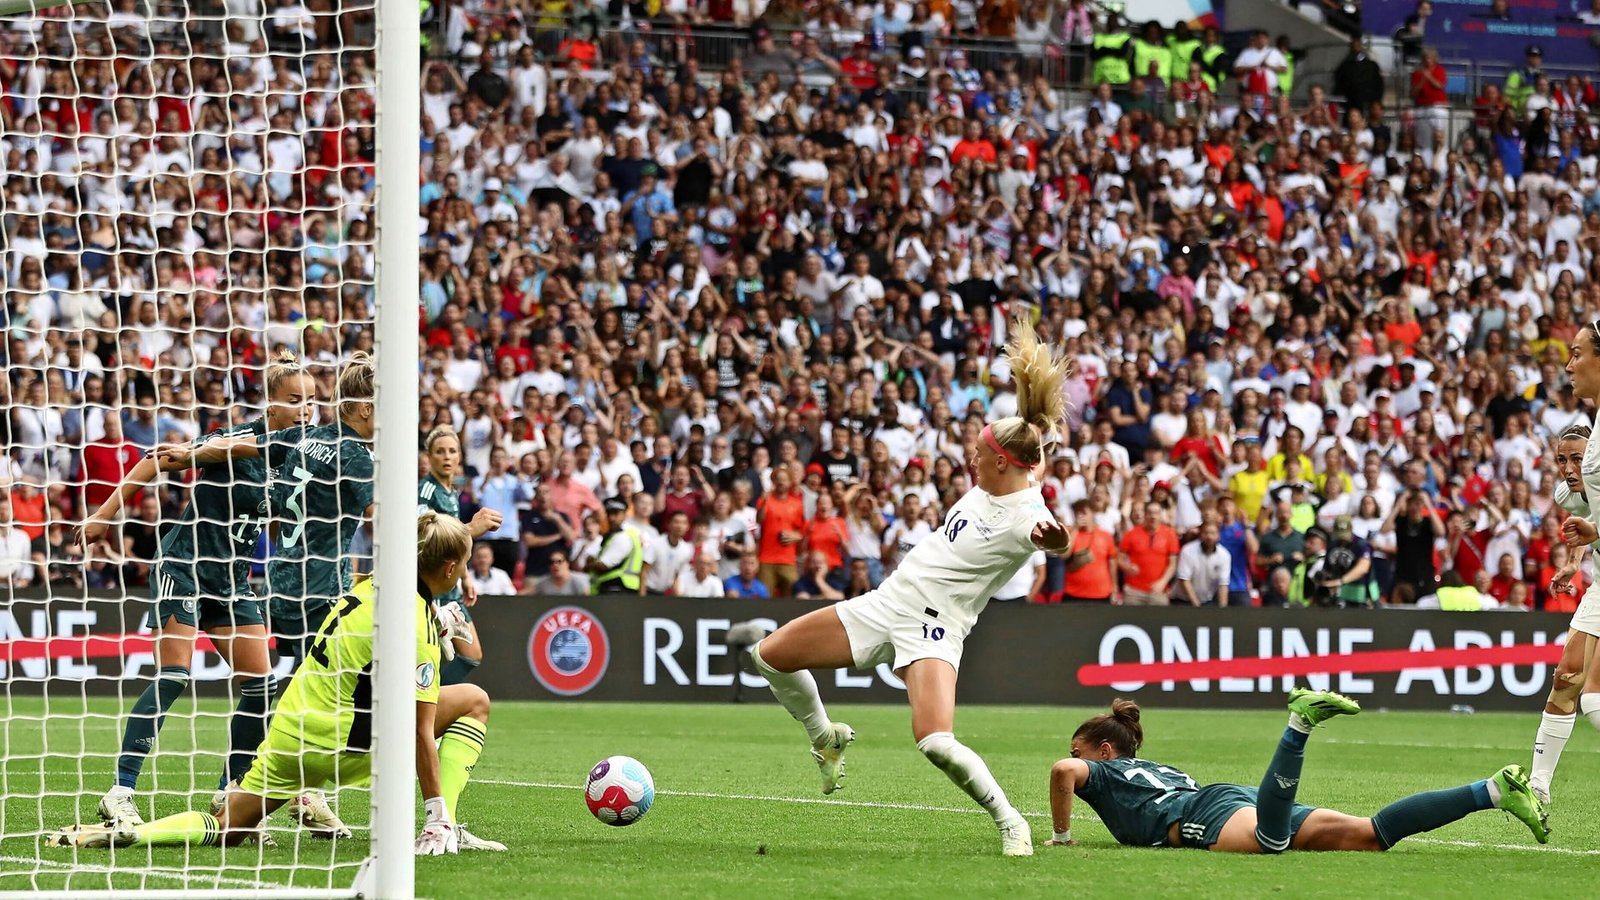 Die Entscheidung in Wembley: Chloe Kelly  erzielt das 2:1 in der Verlängerung gegen die DFB-Elf.Foto: IMAGO//Paul Terry